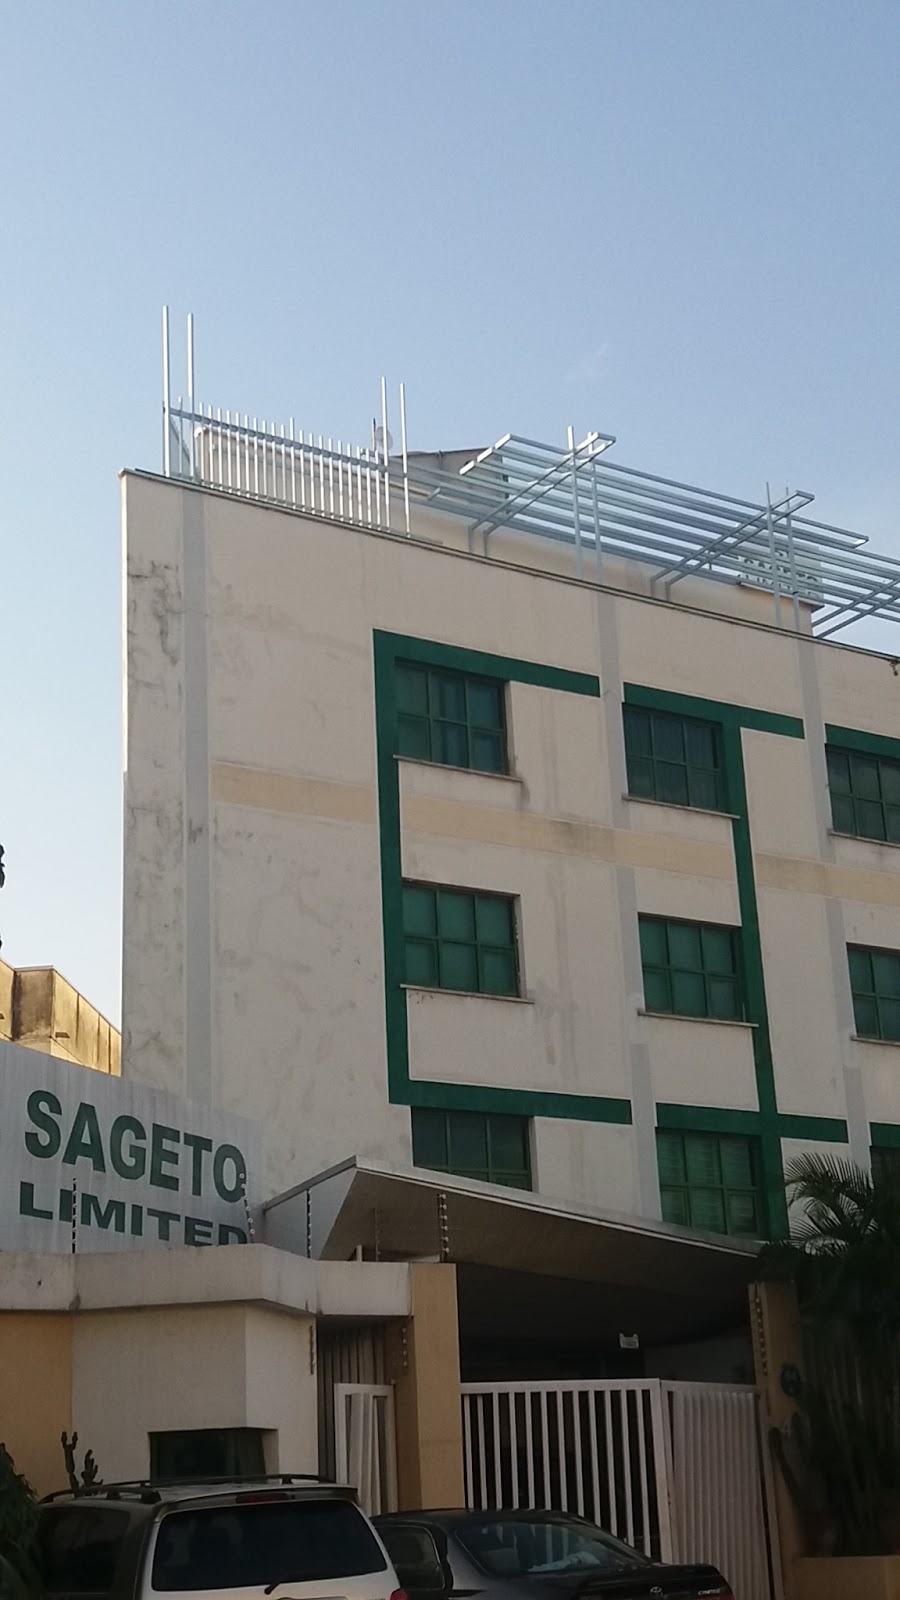 Sageto Limited